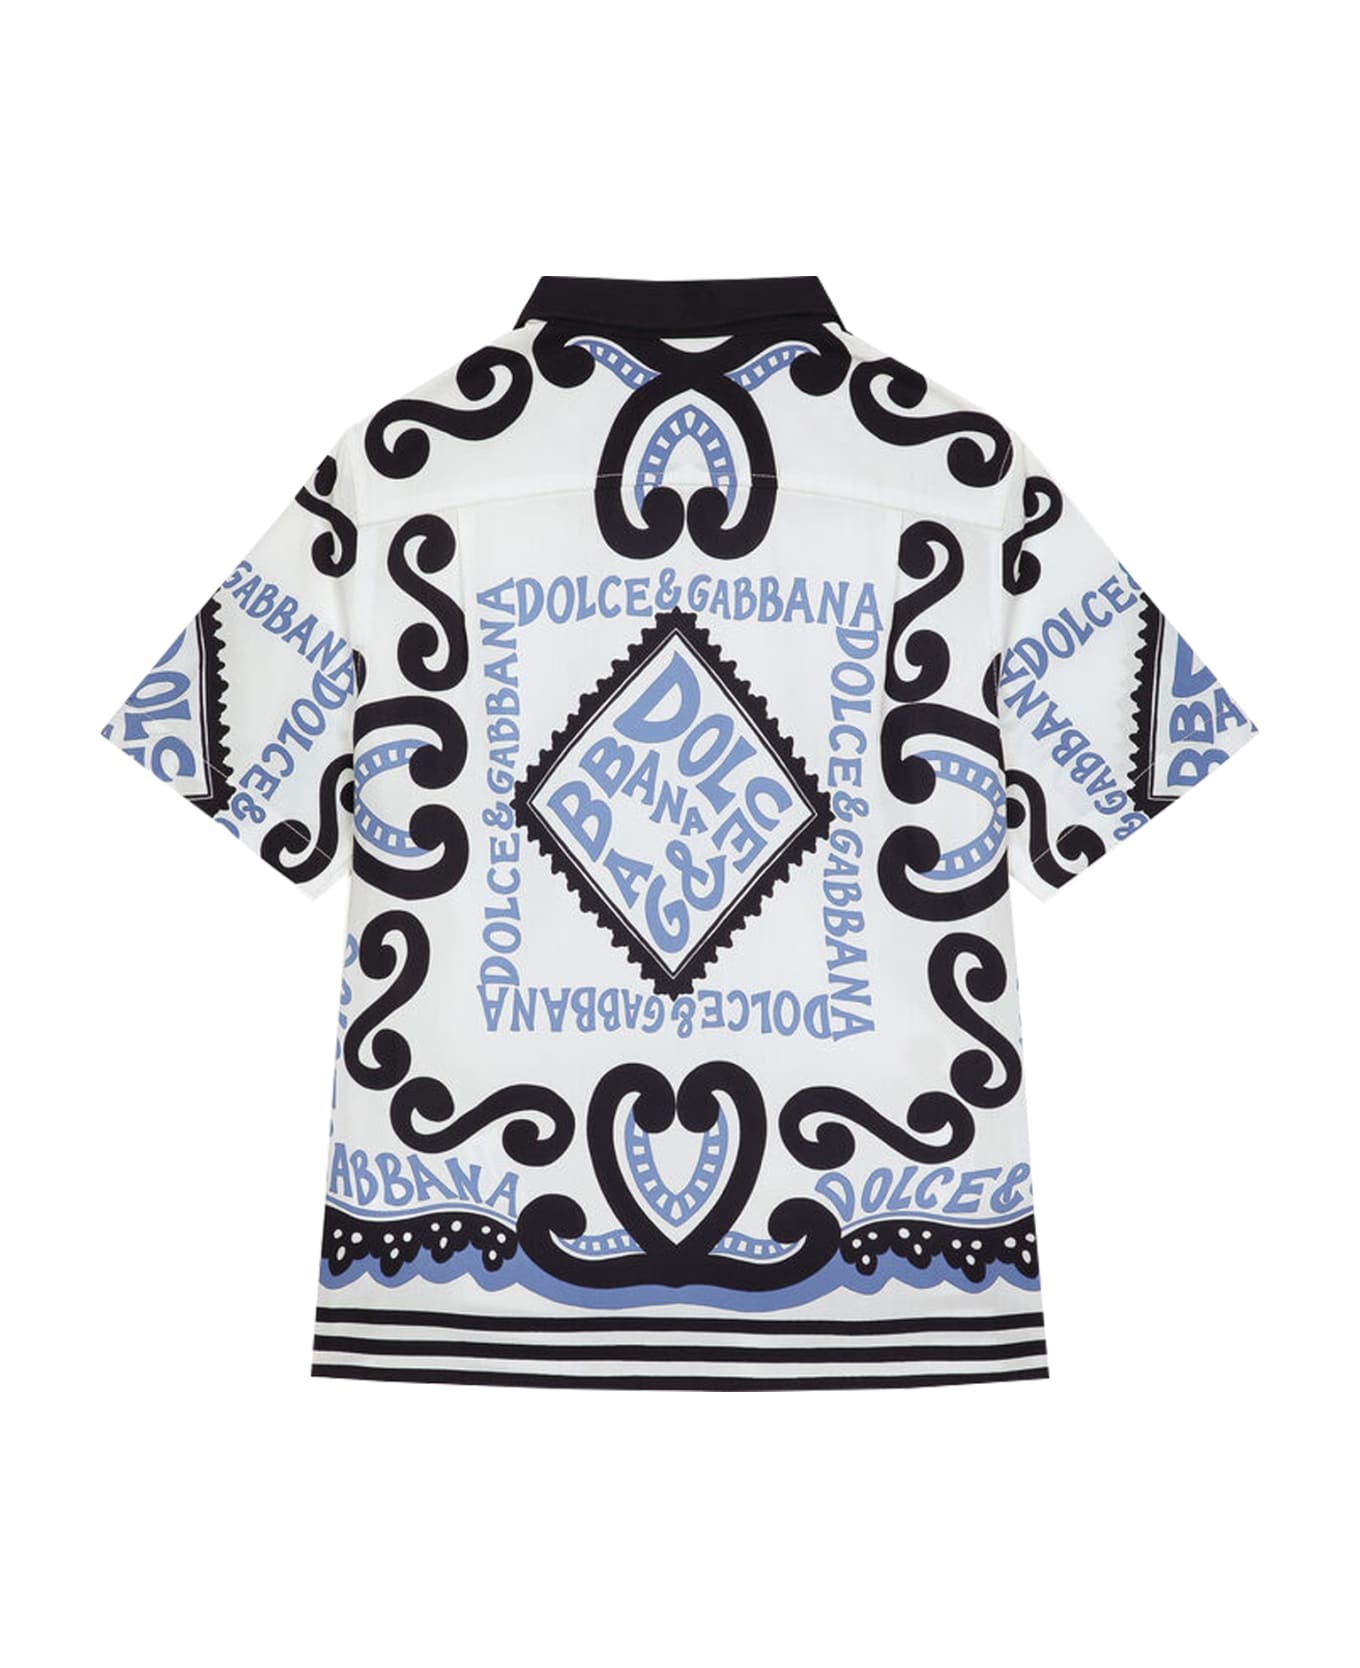 Dolce & Gabbana Marine Print Poplin Shirt - Multicolor